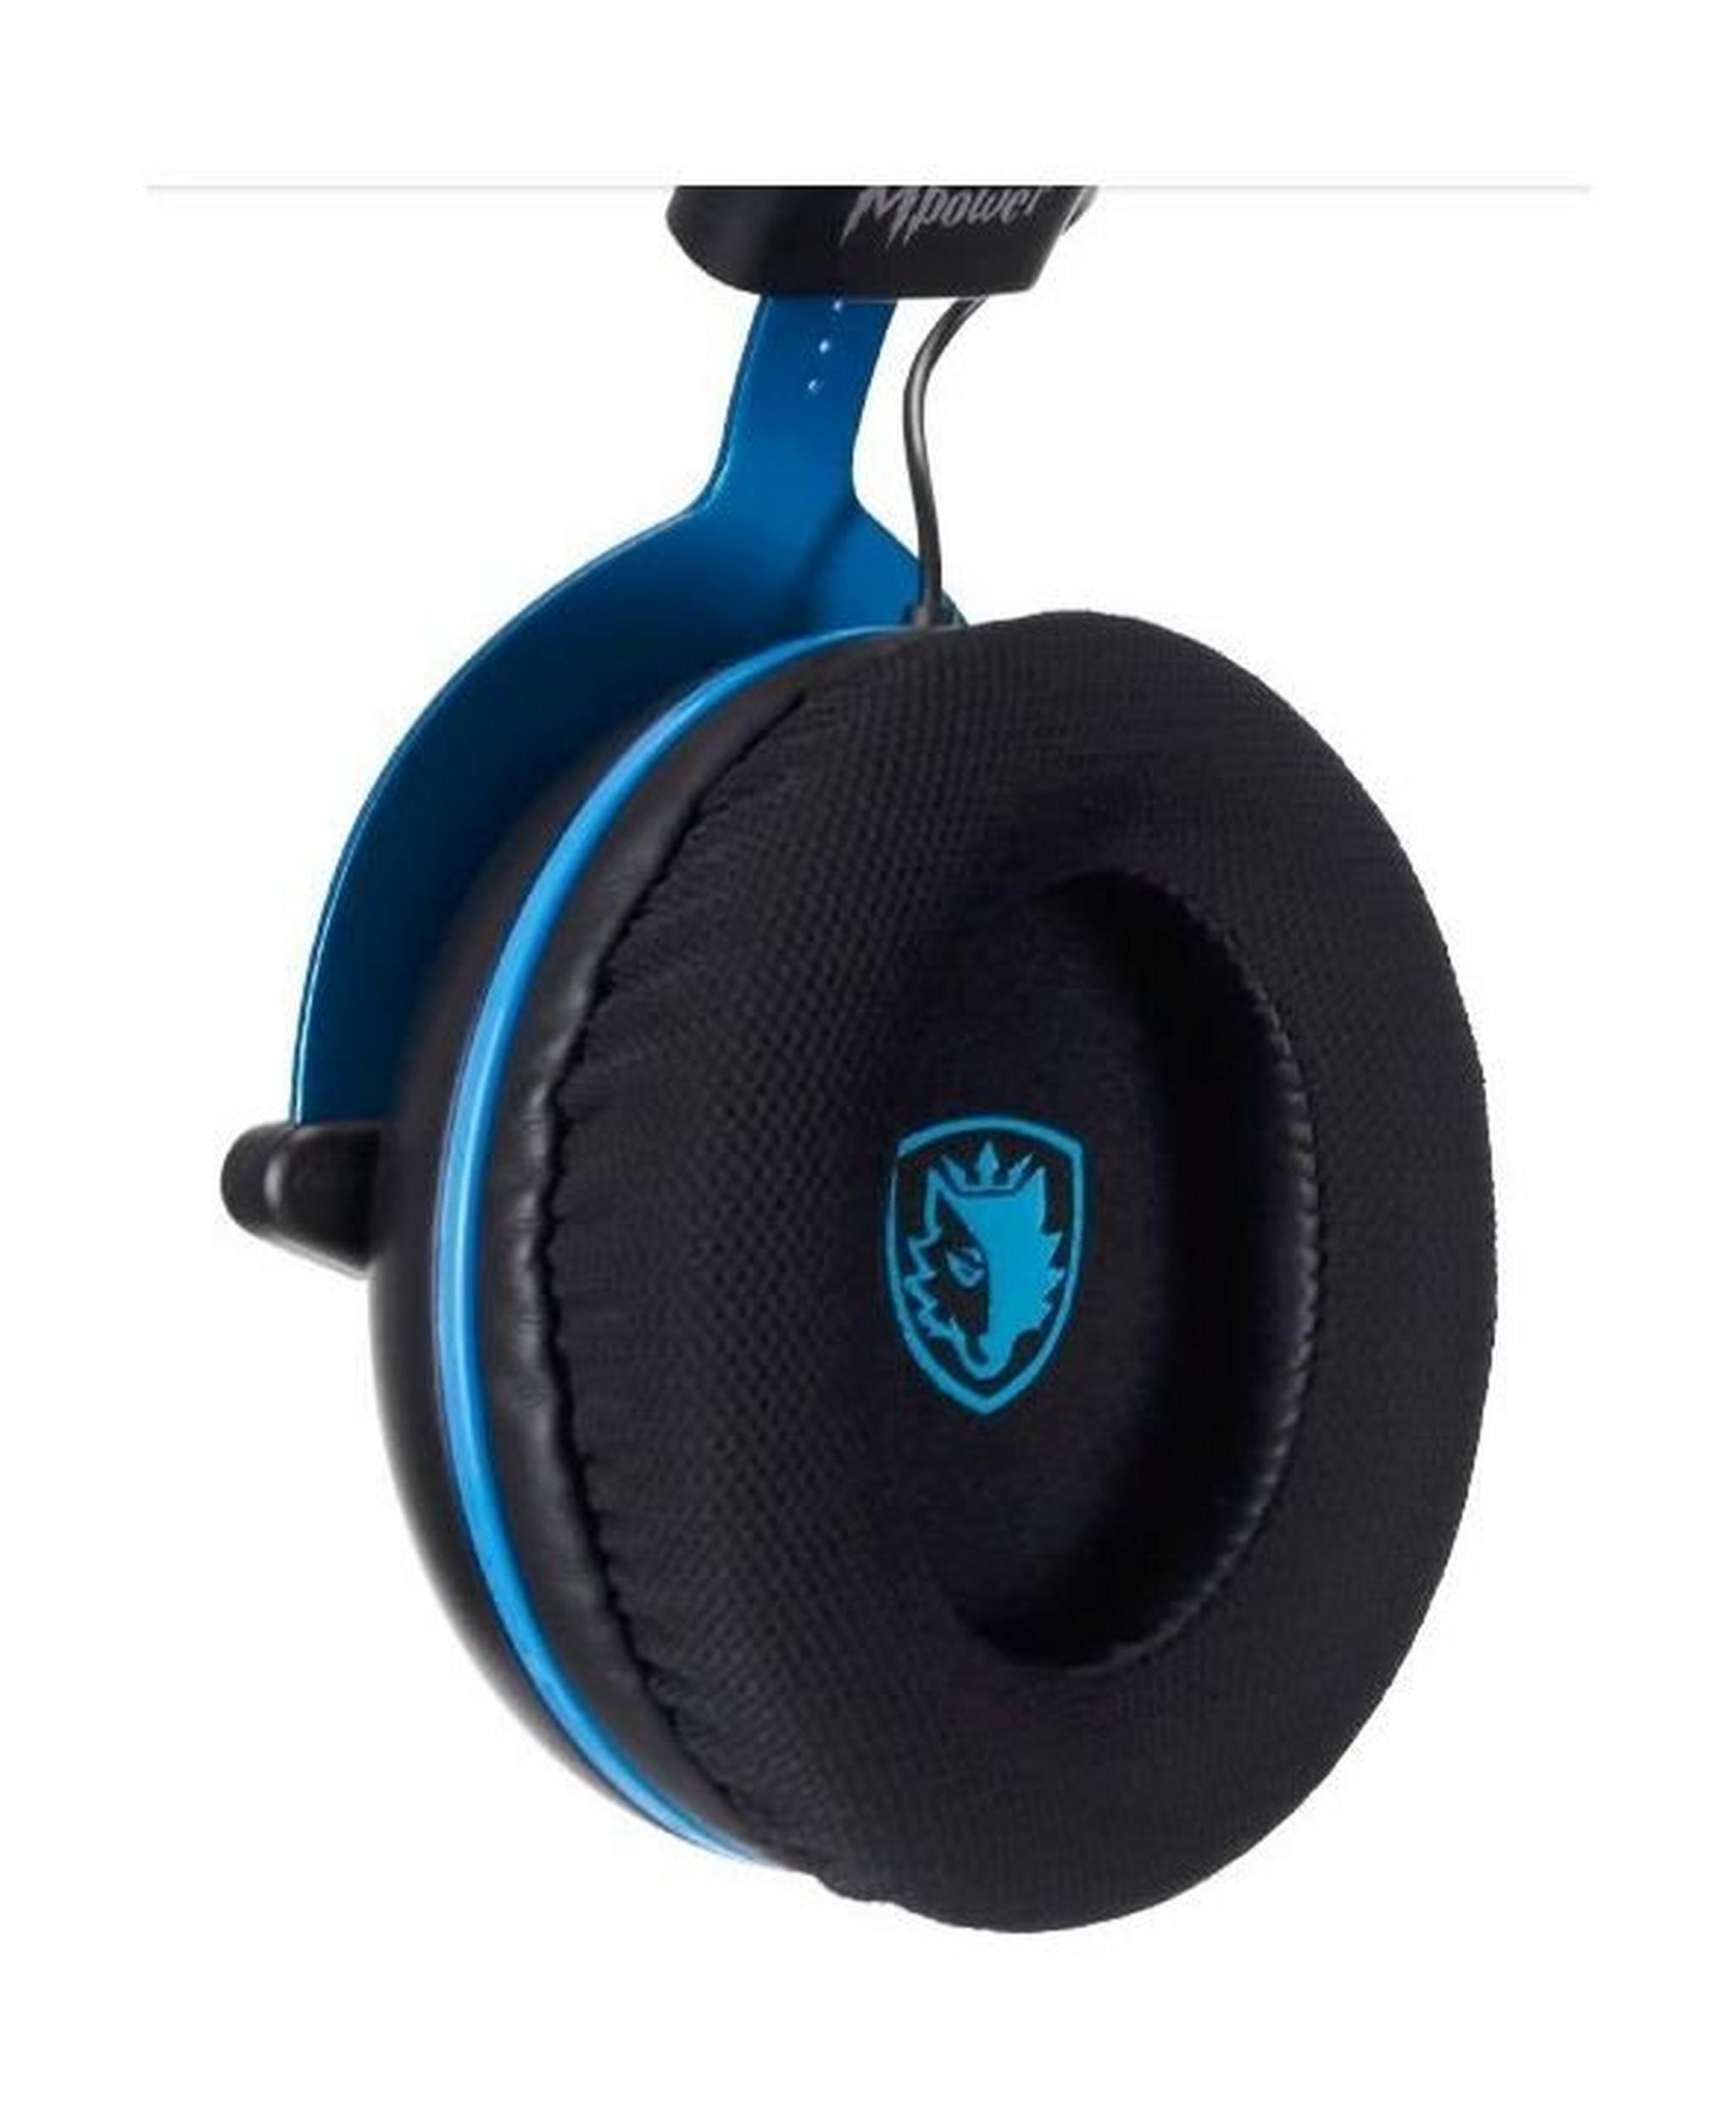 Sades Mpower Gaming Headset - Black/Blue